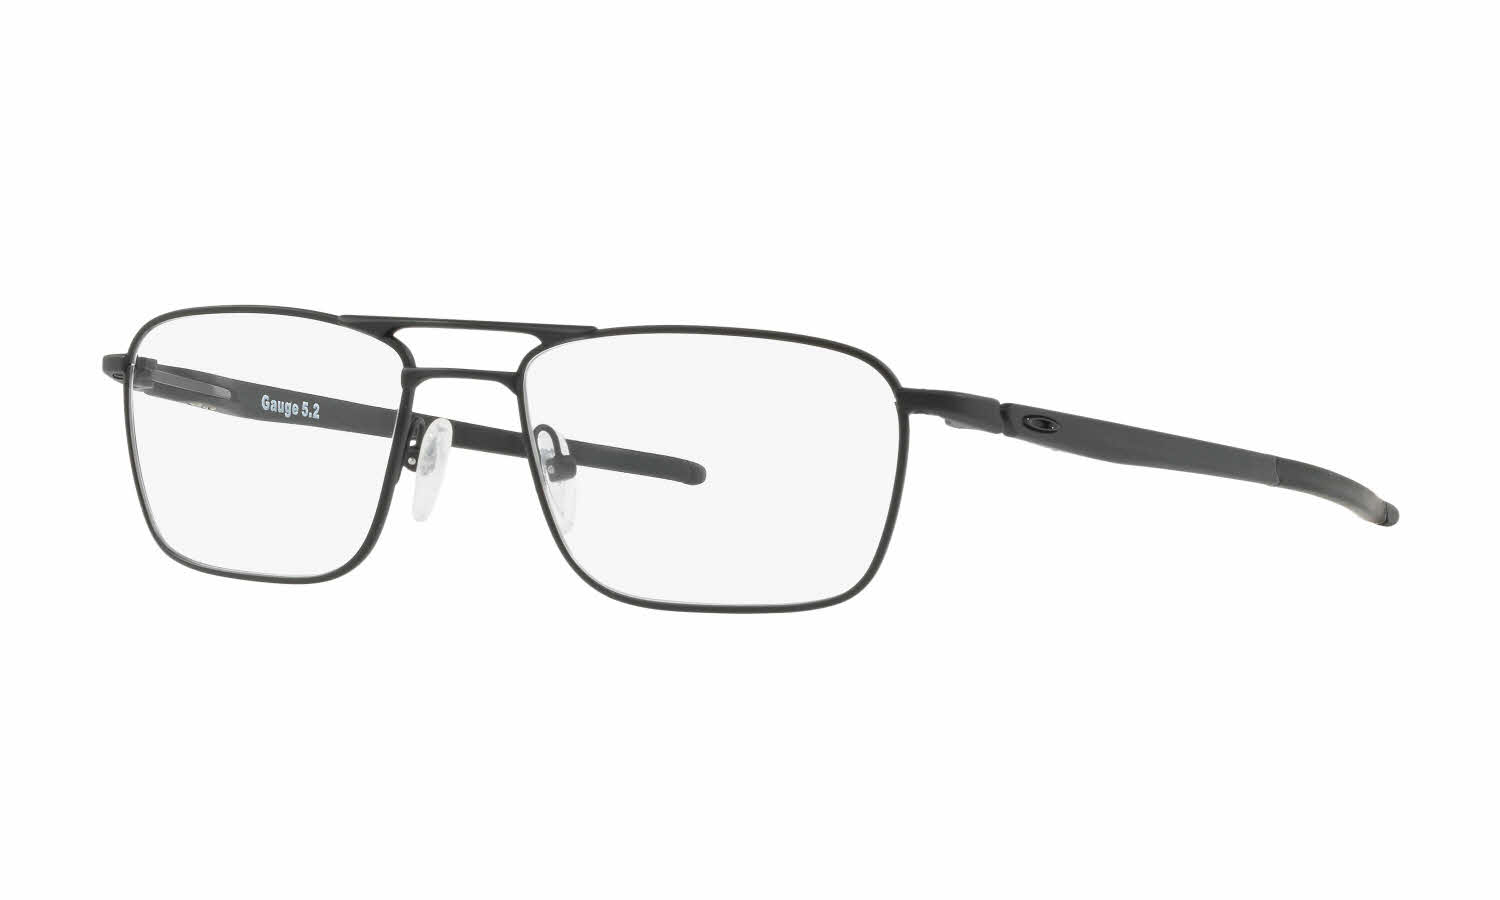 Oakley Gauge 5.2 Truss Eyeglasses | Free Shipping